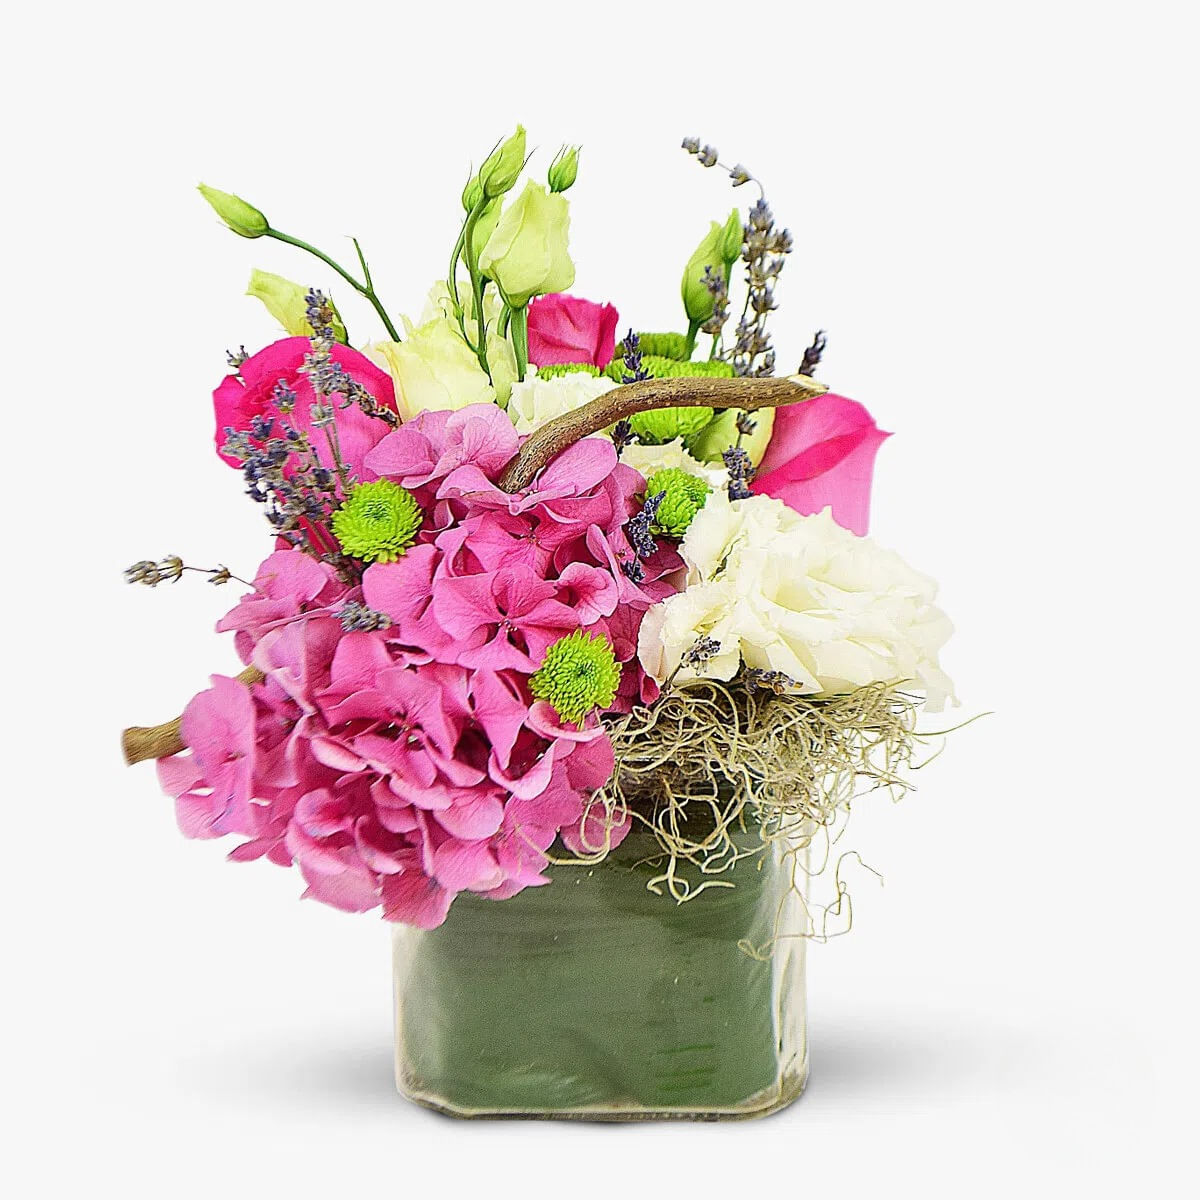 Buchet de flori – Aranjament floral Elegant – Standard Aranjament